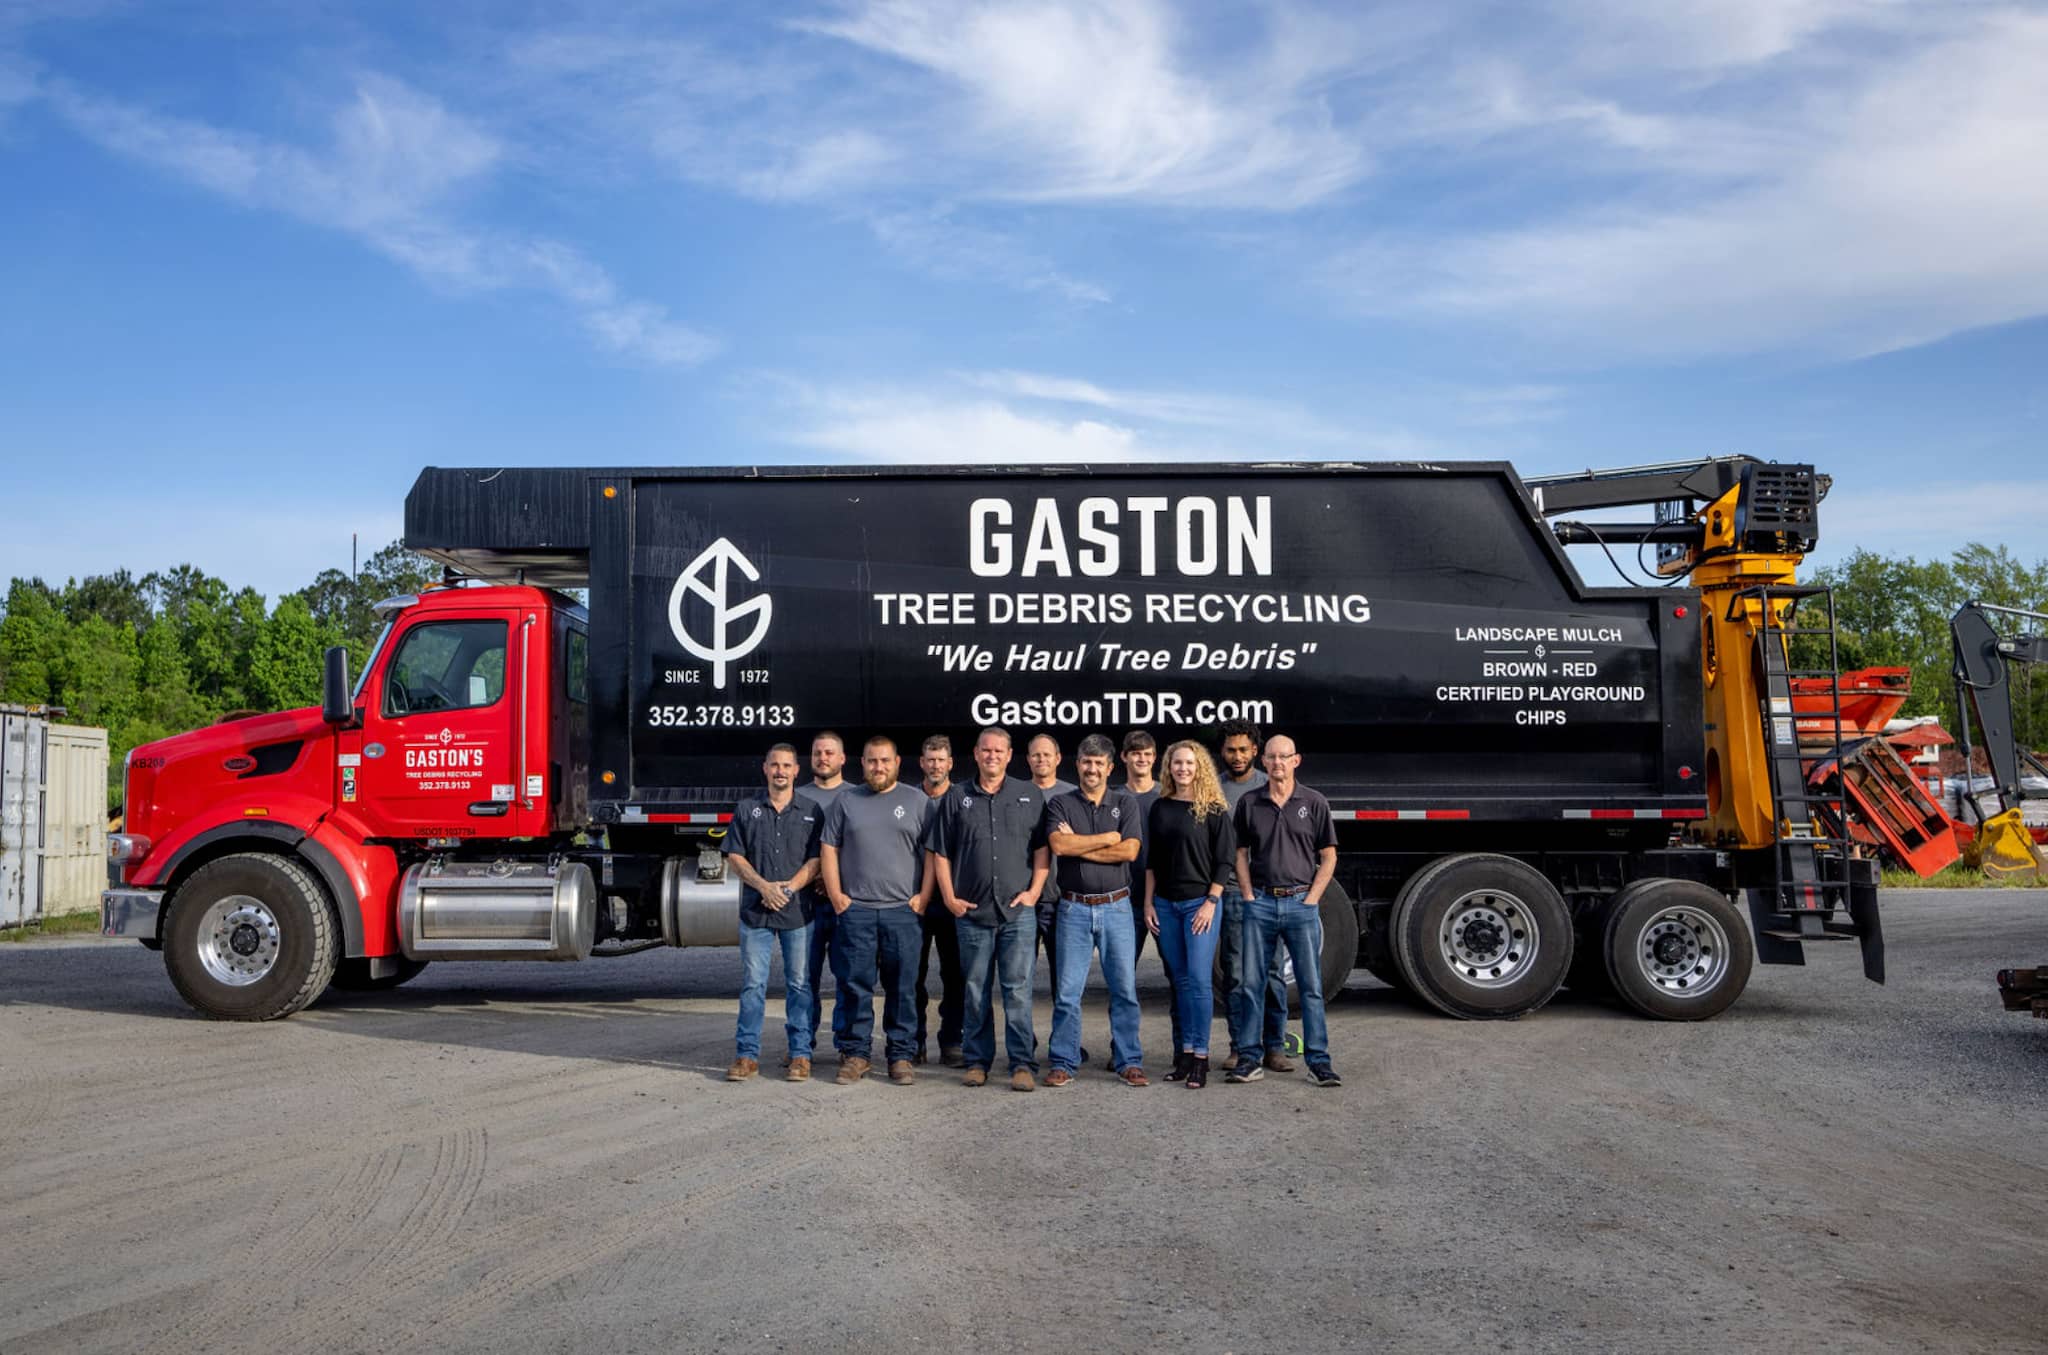 Gaston team